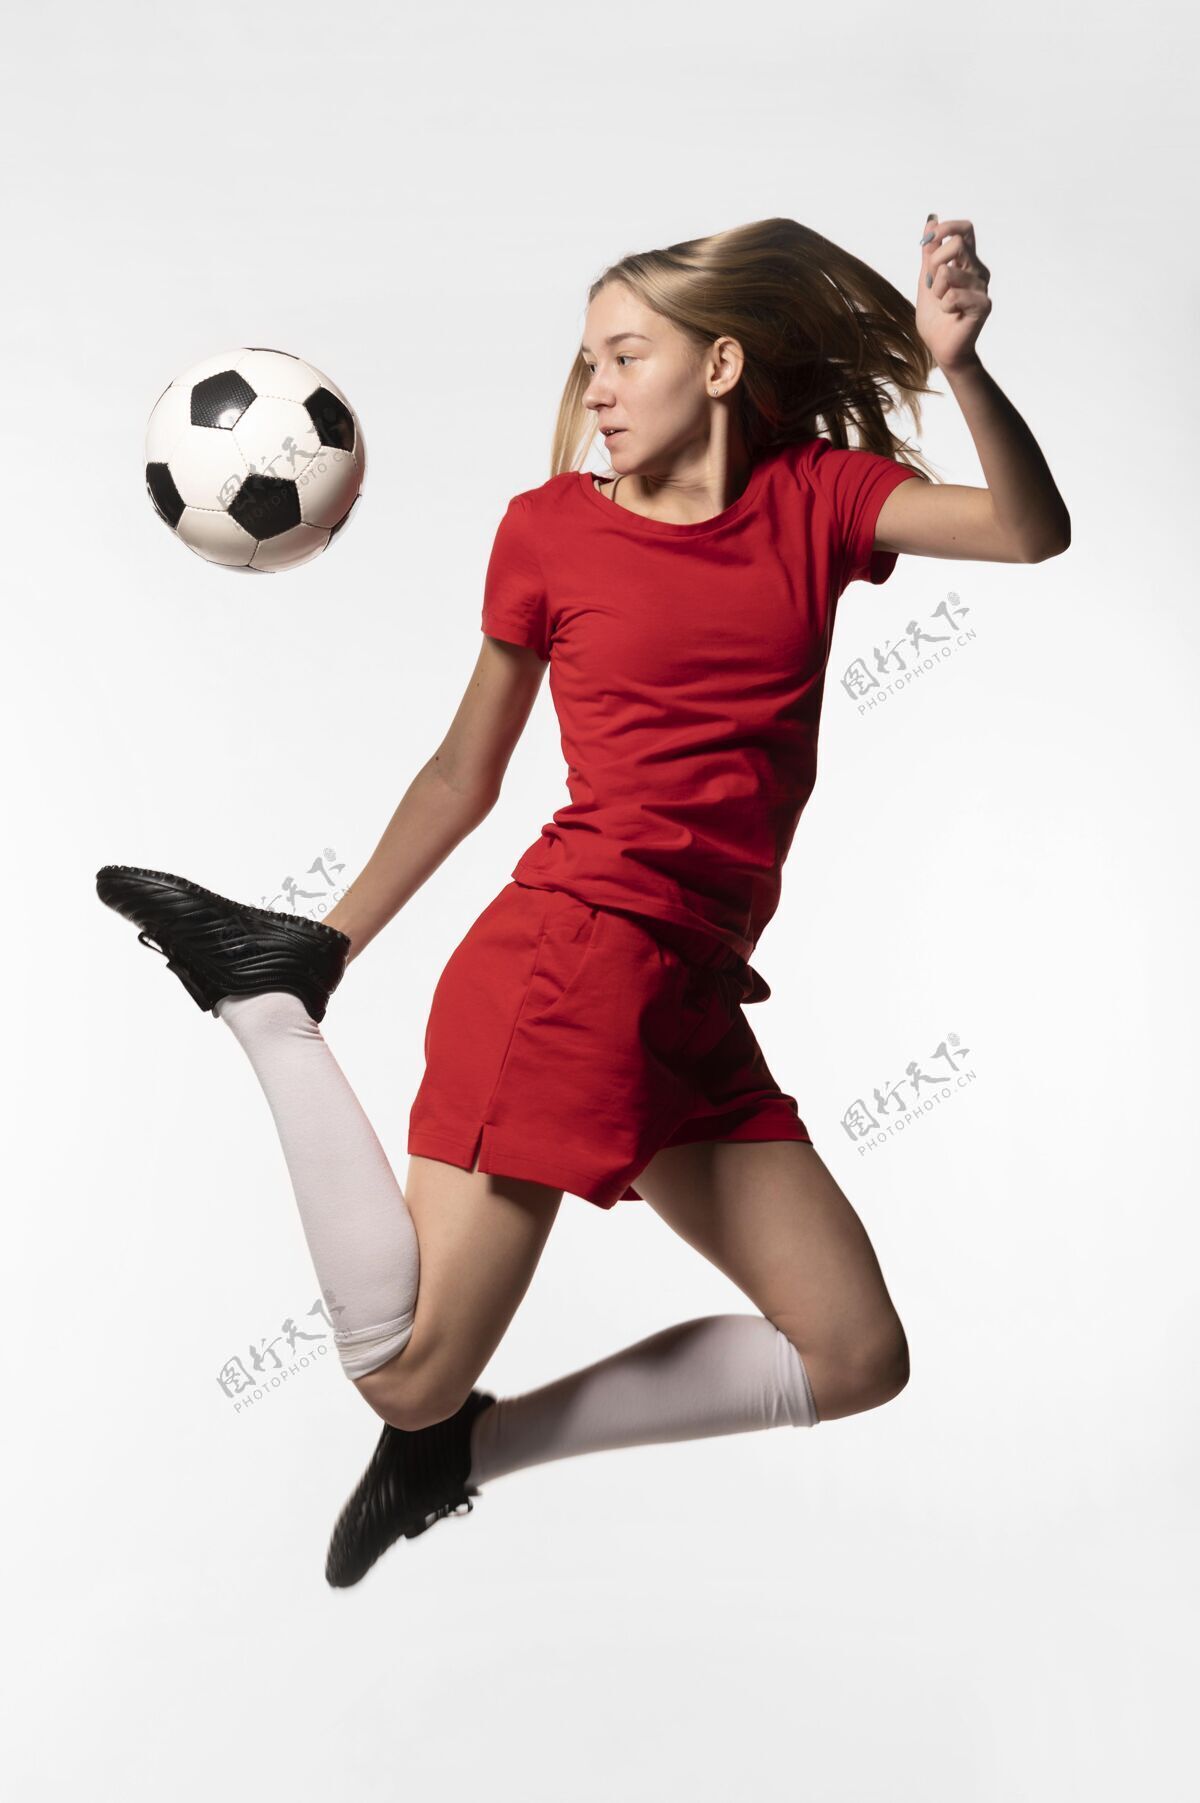 足球运动员女足球运动员踢球跳跃足球制服踢